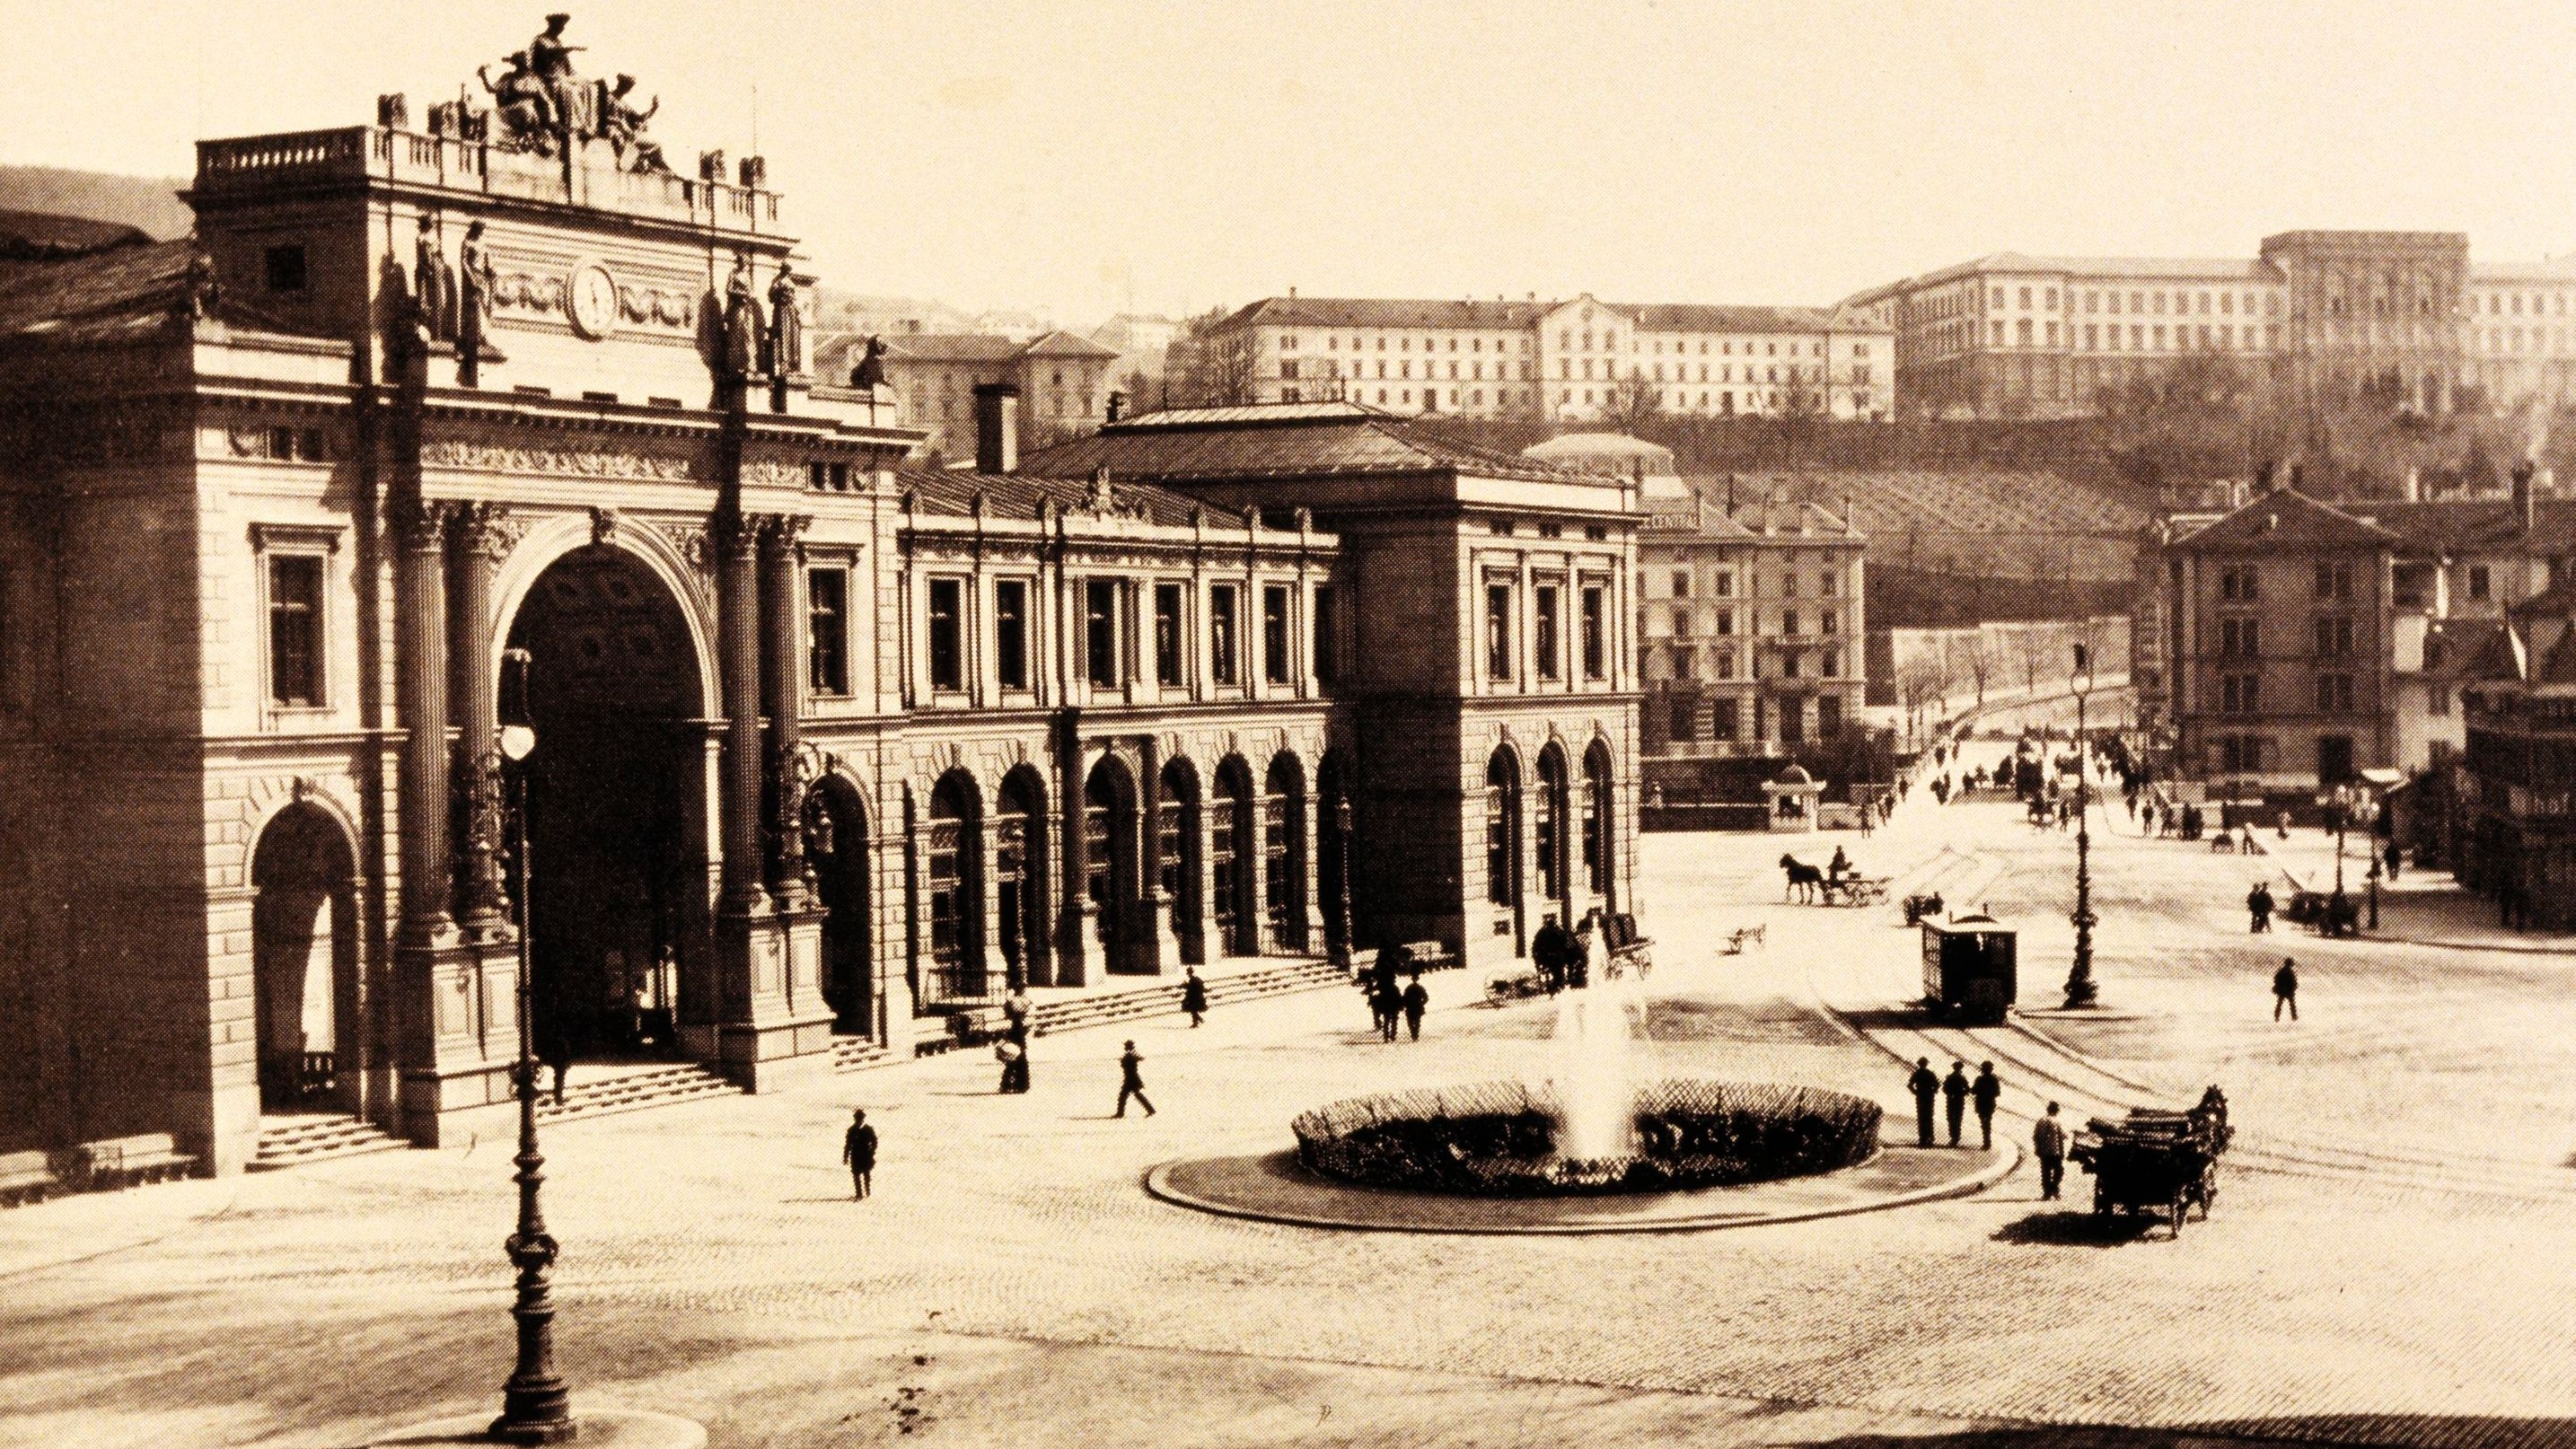 Der Zürcher Bahnhofplatz um etwa 1880: Die einzigen Transportmittel auf den Strassen waren Kutschen.